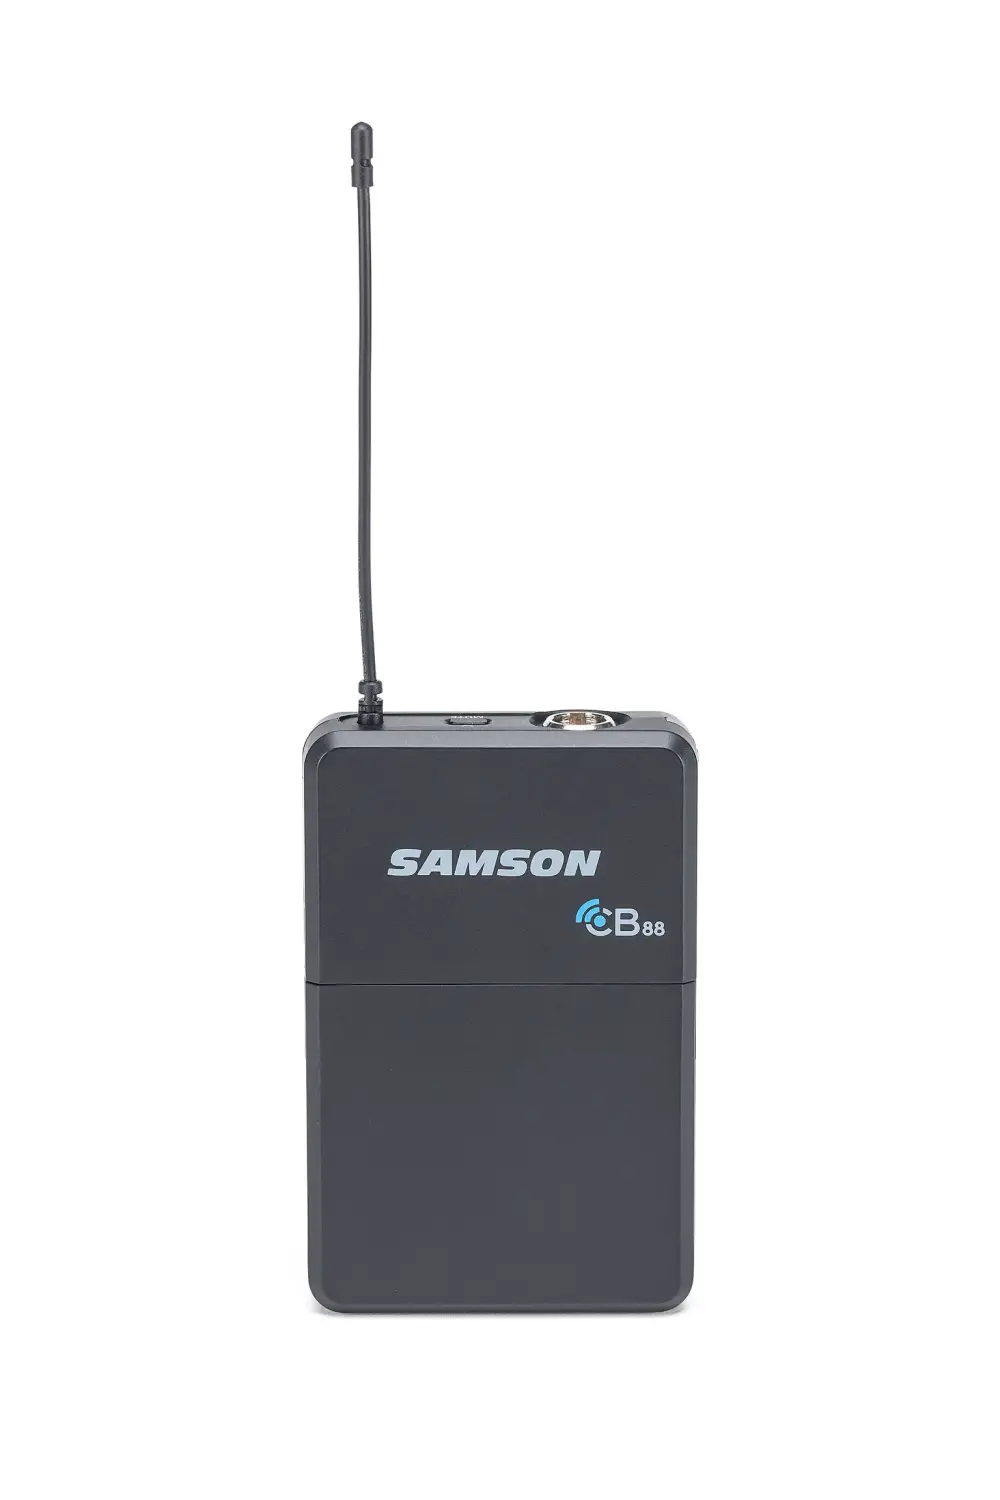 Samson CR88X (LM5) UHF Kablosuz Mikrofon - 2